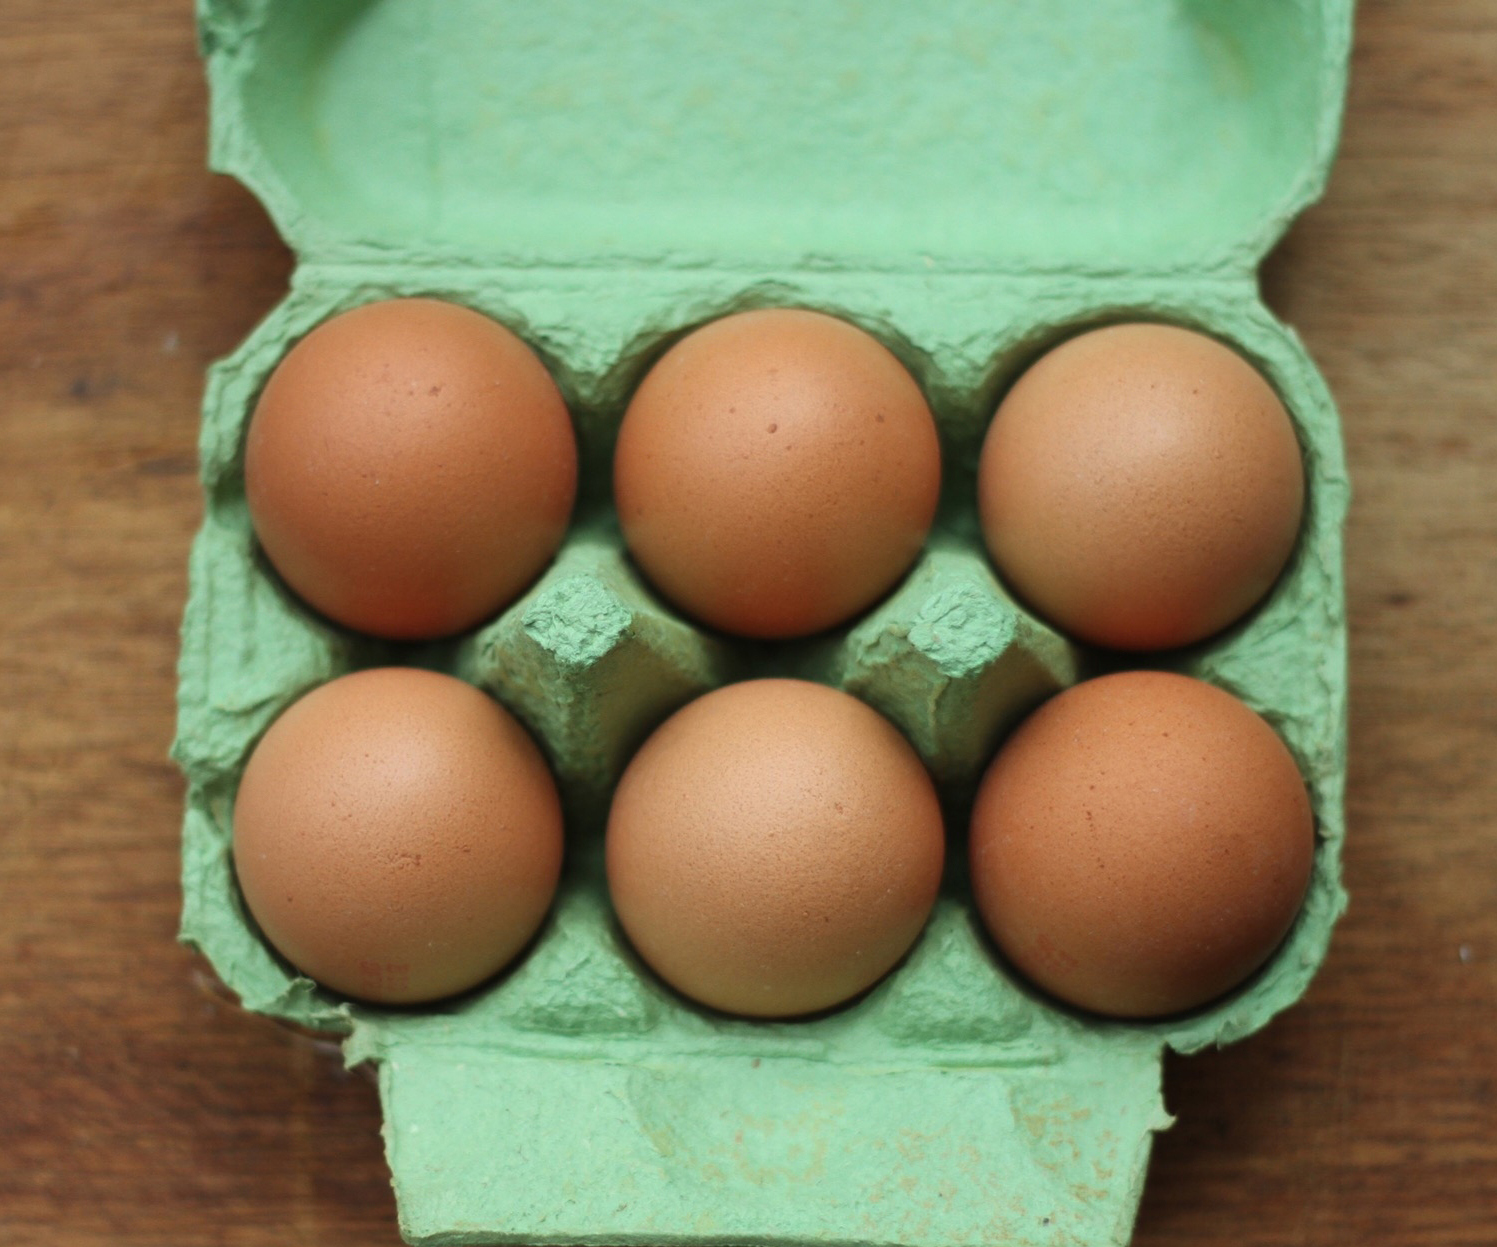 CHOICE urges boycott of “fake” free range egg brands